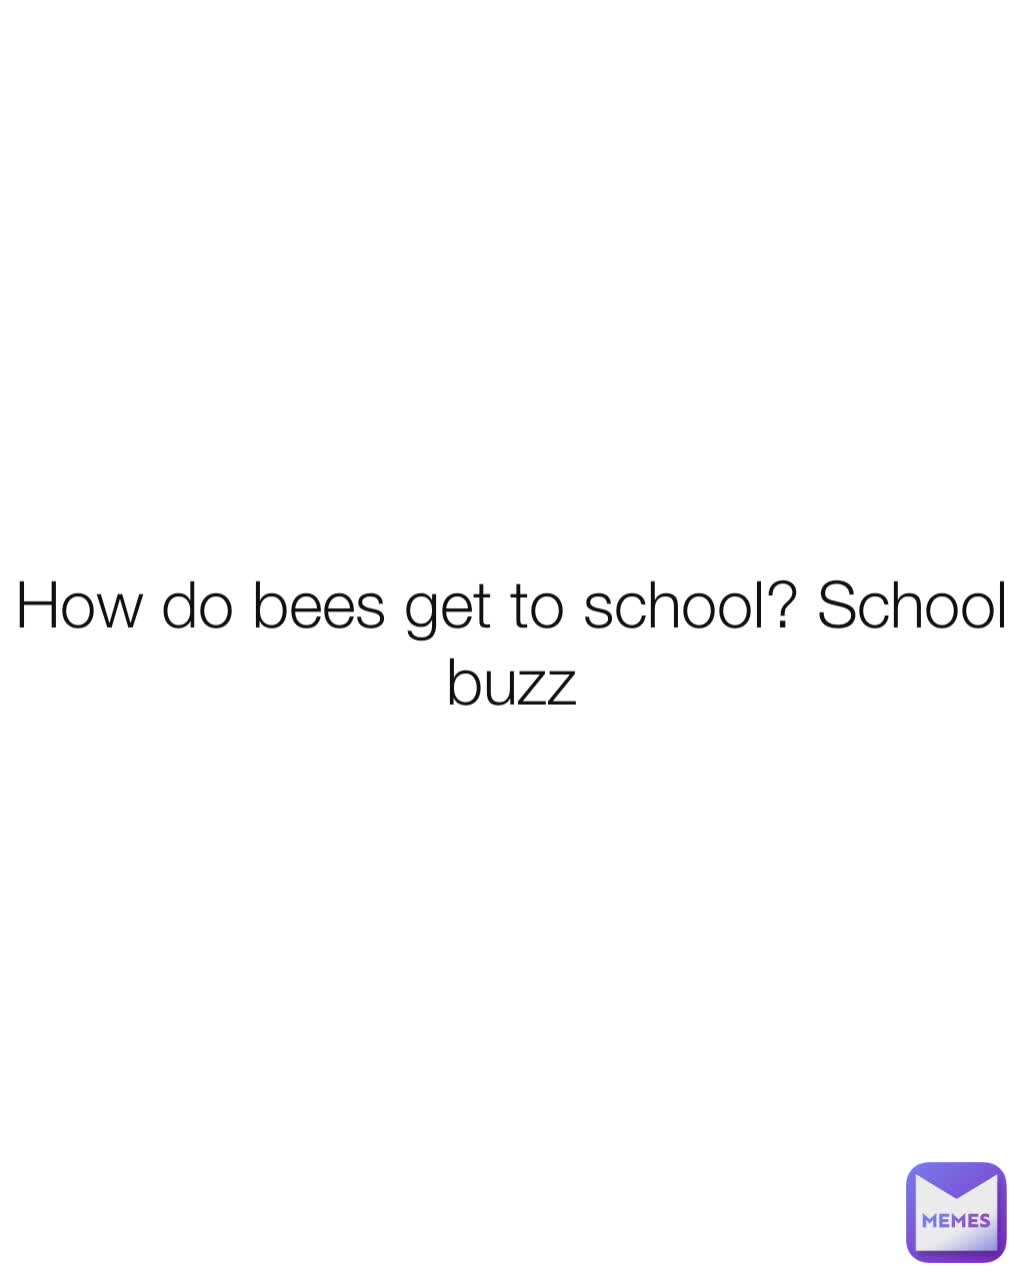 How do bees get to school? School buzz